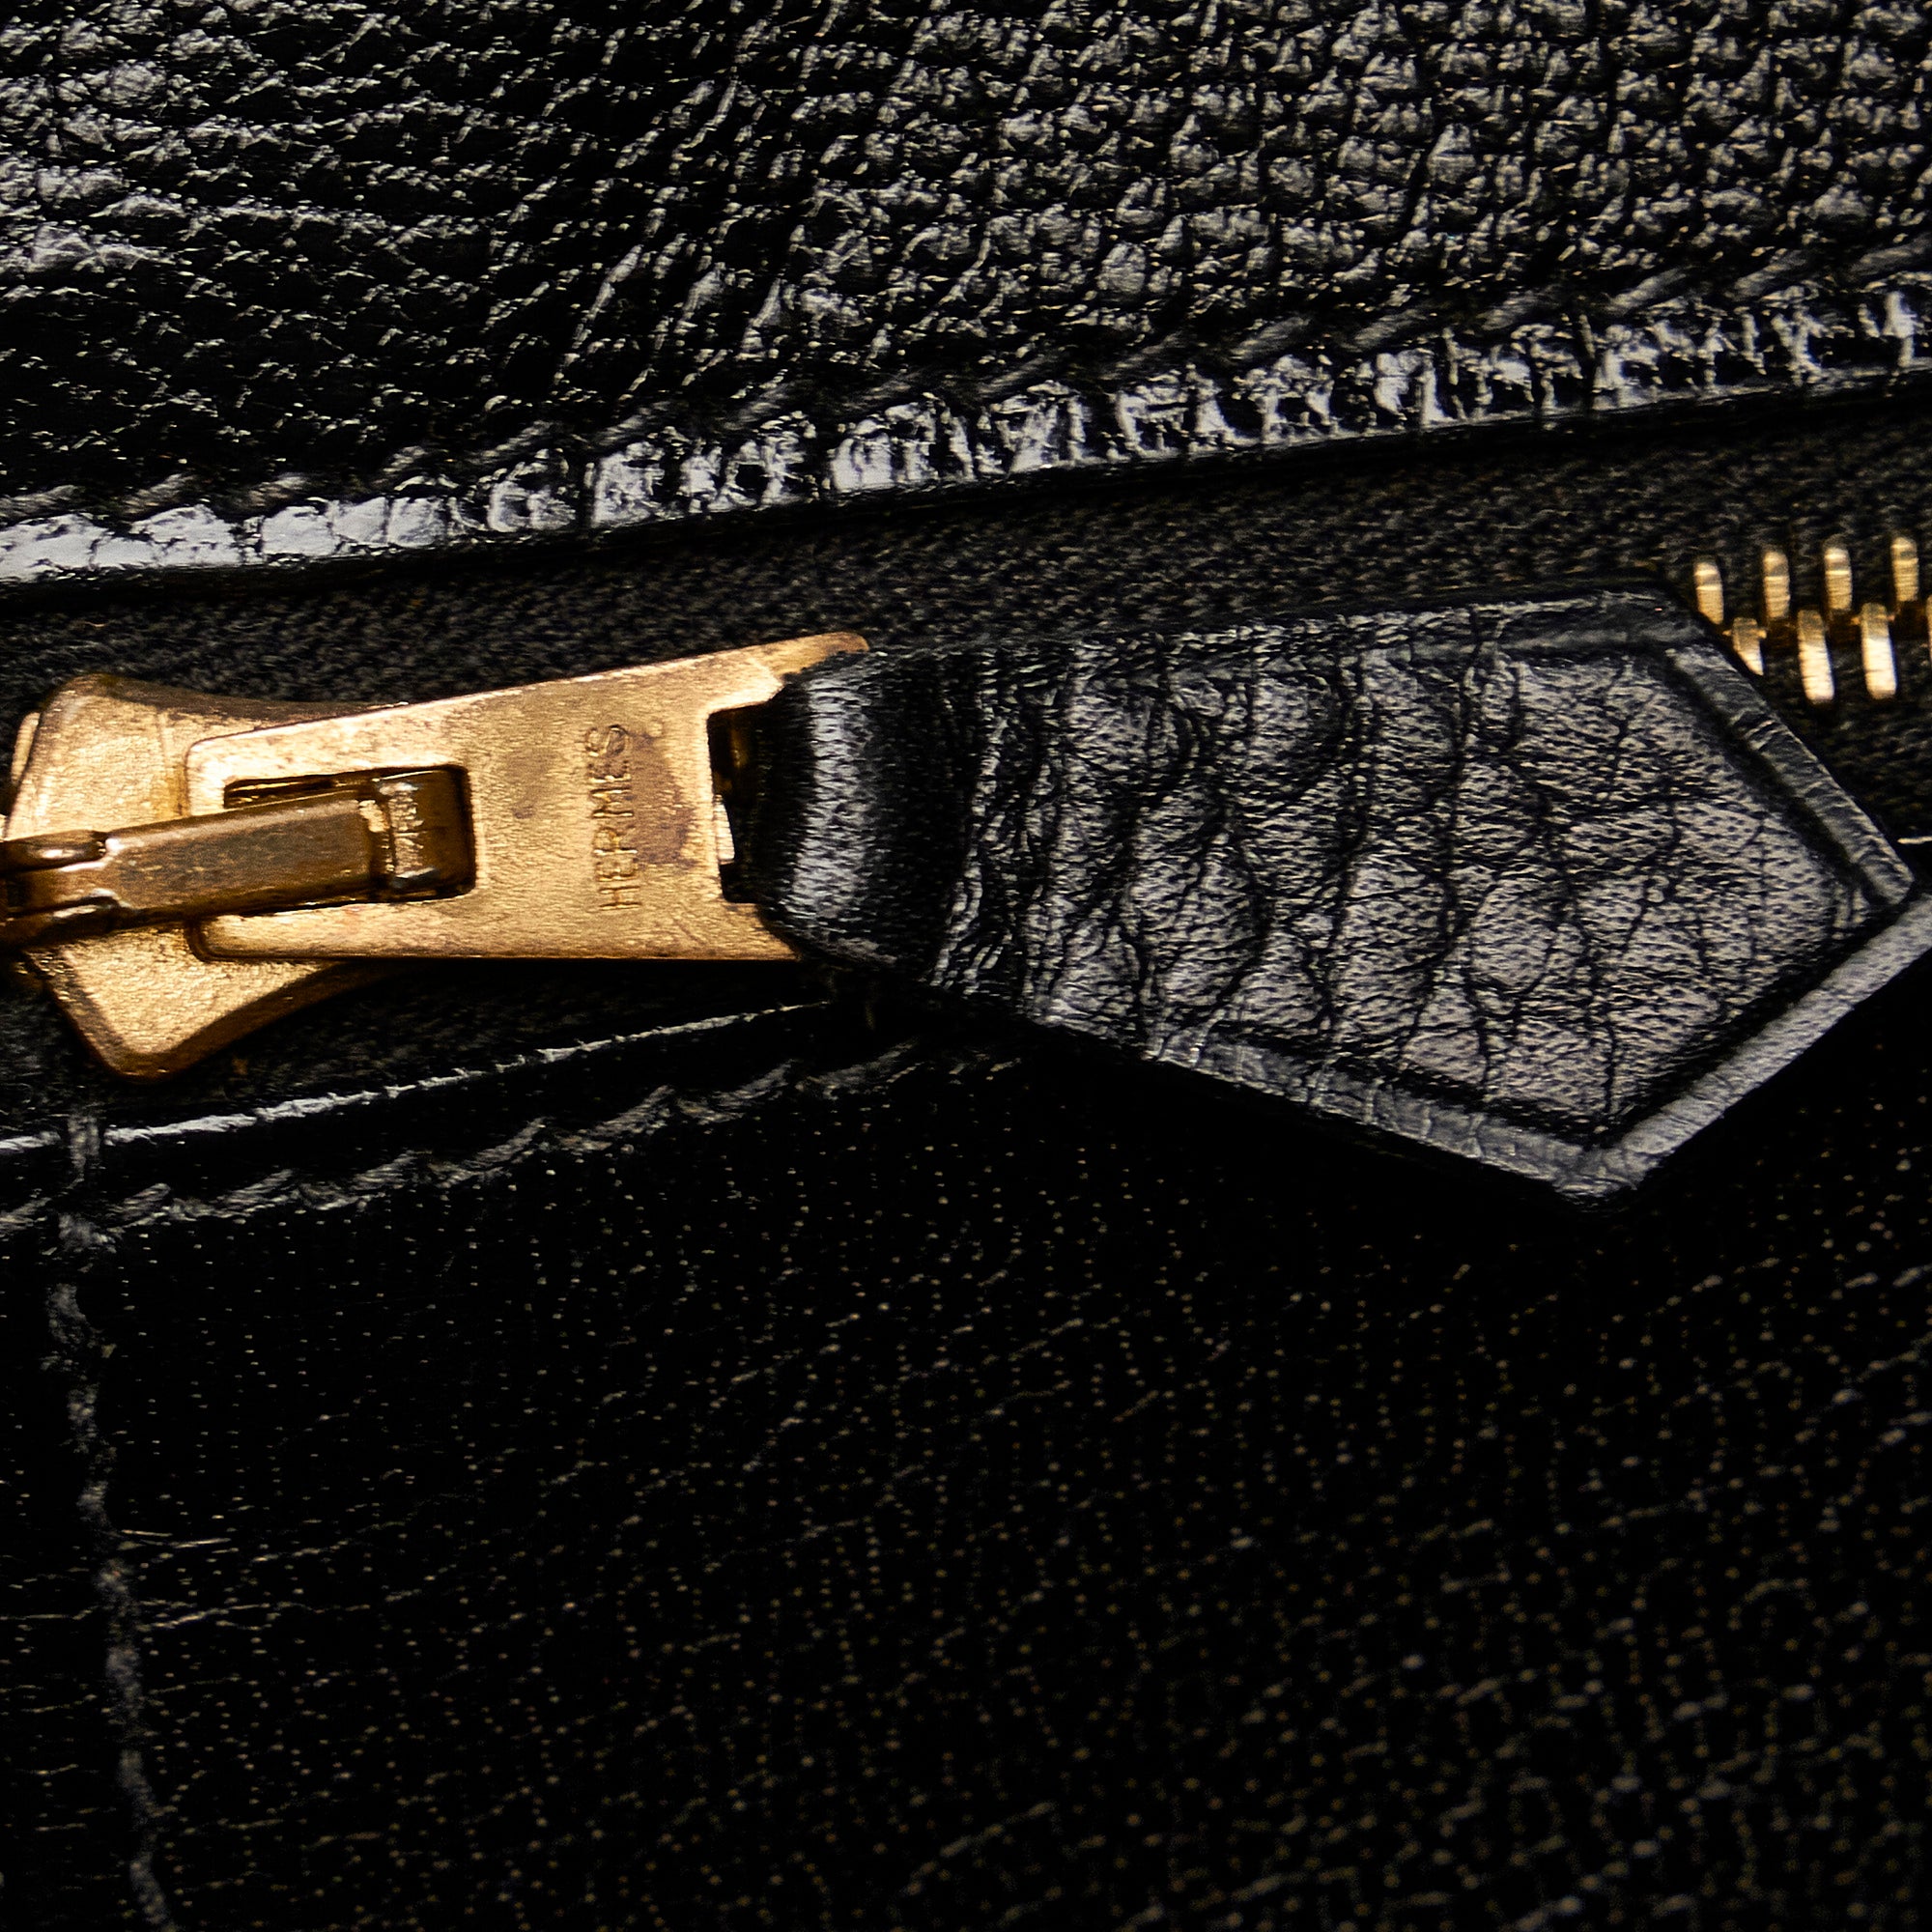 Hermes Birkin 35 Black Togo with Gold Hardware – Vault 55